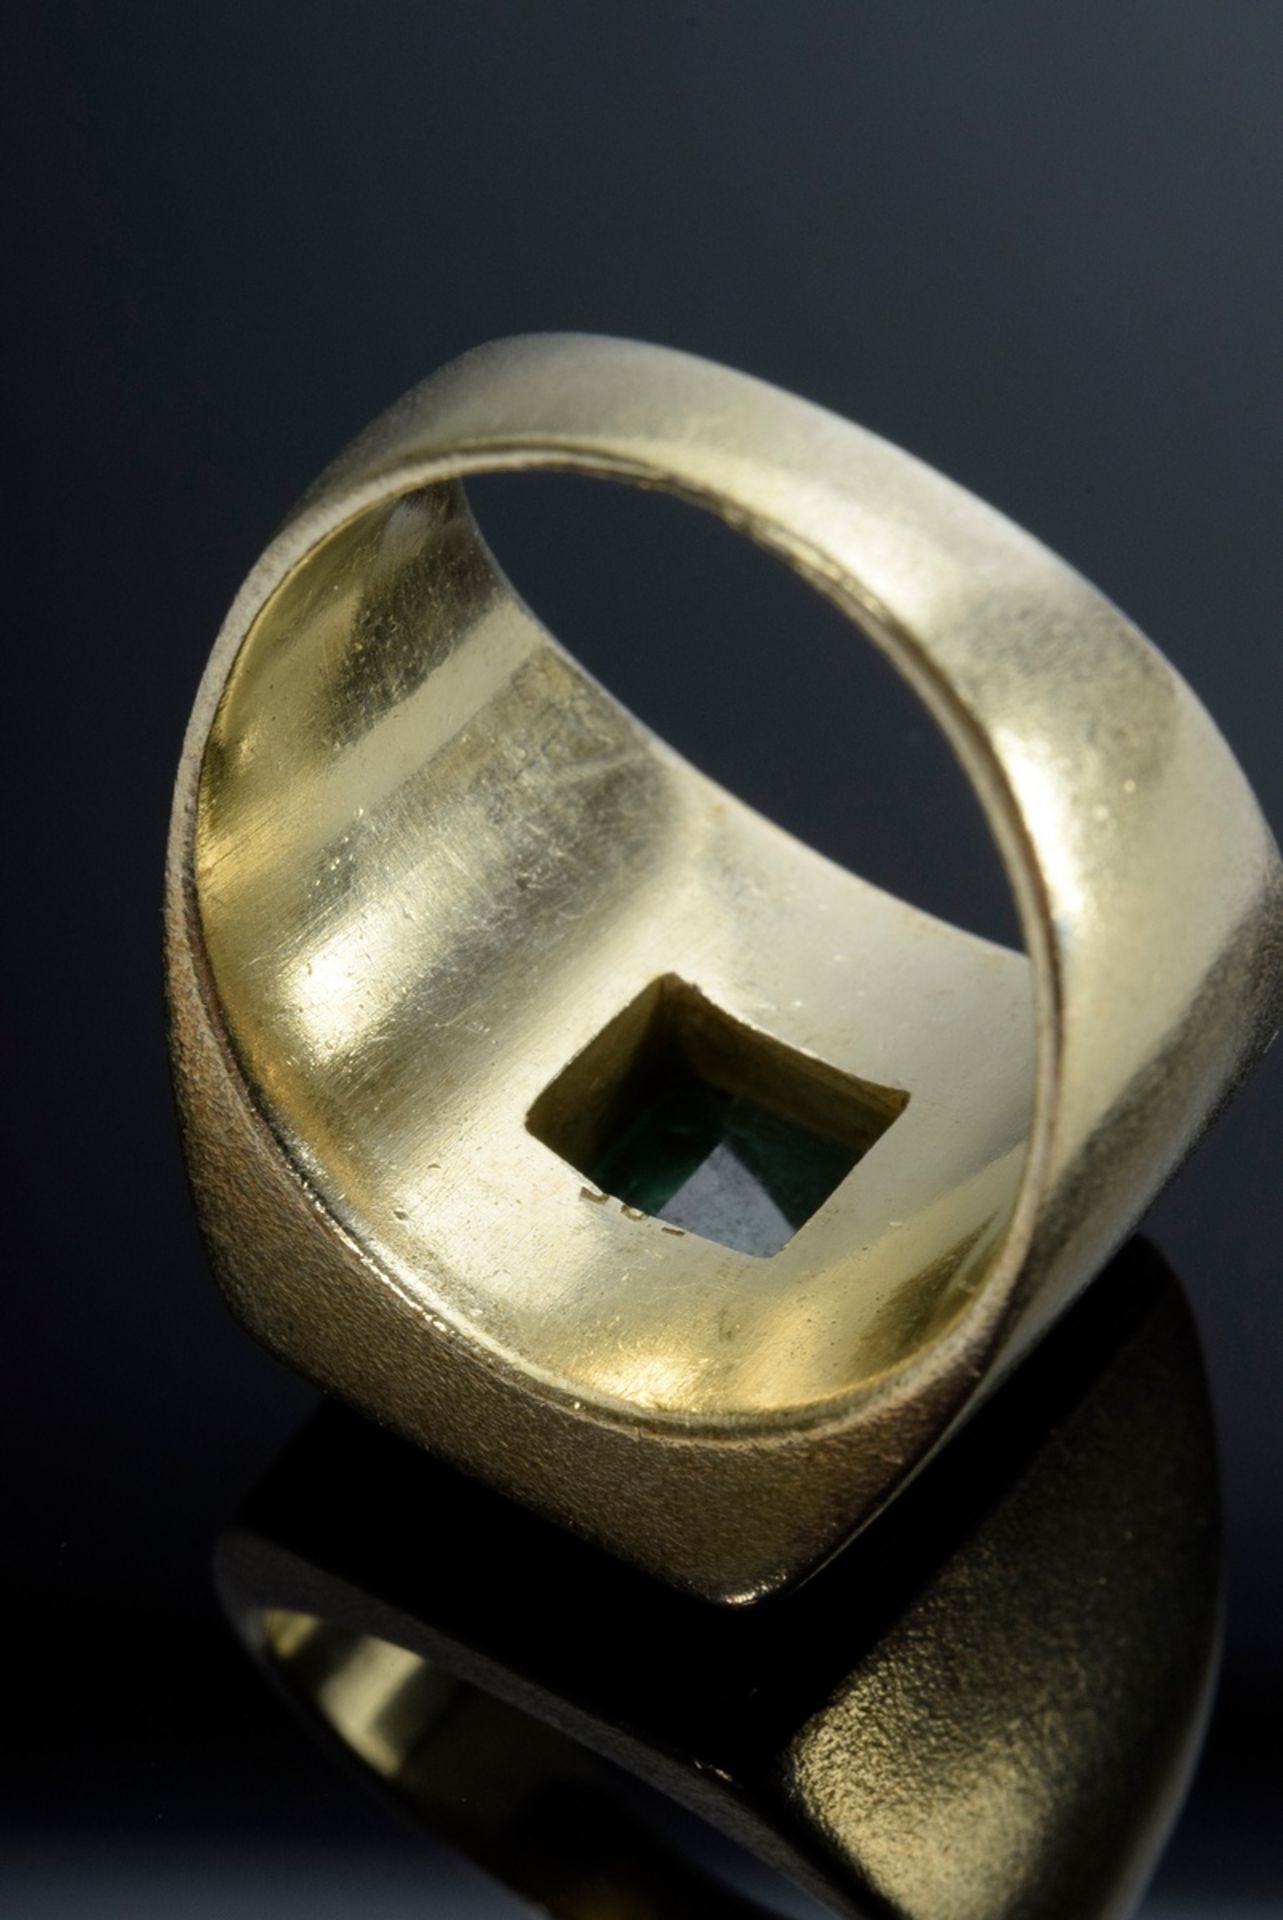 Markanter GG 585 Ring mit Smaragd im Treppenschliff (ca. 1.85ct) an den Ecken mit kleinen Schrauben - Bild 3 aus 3